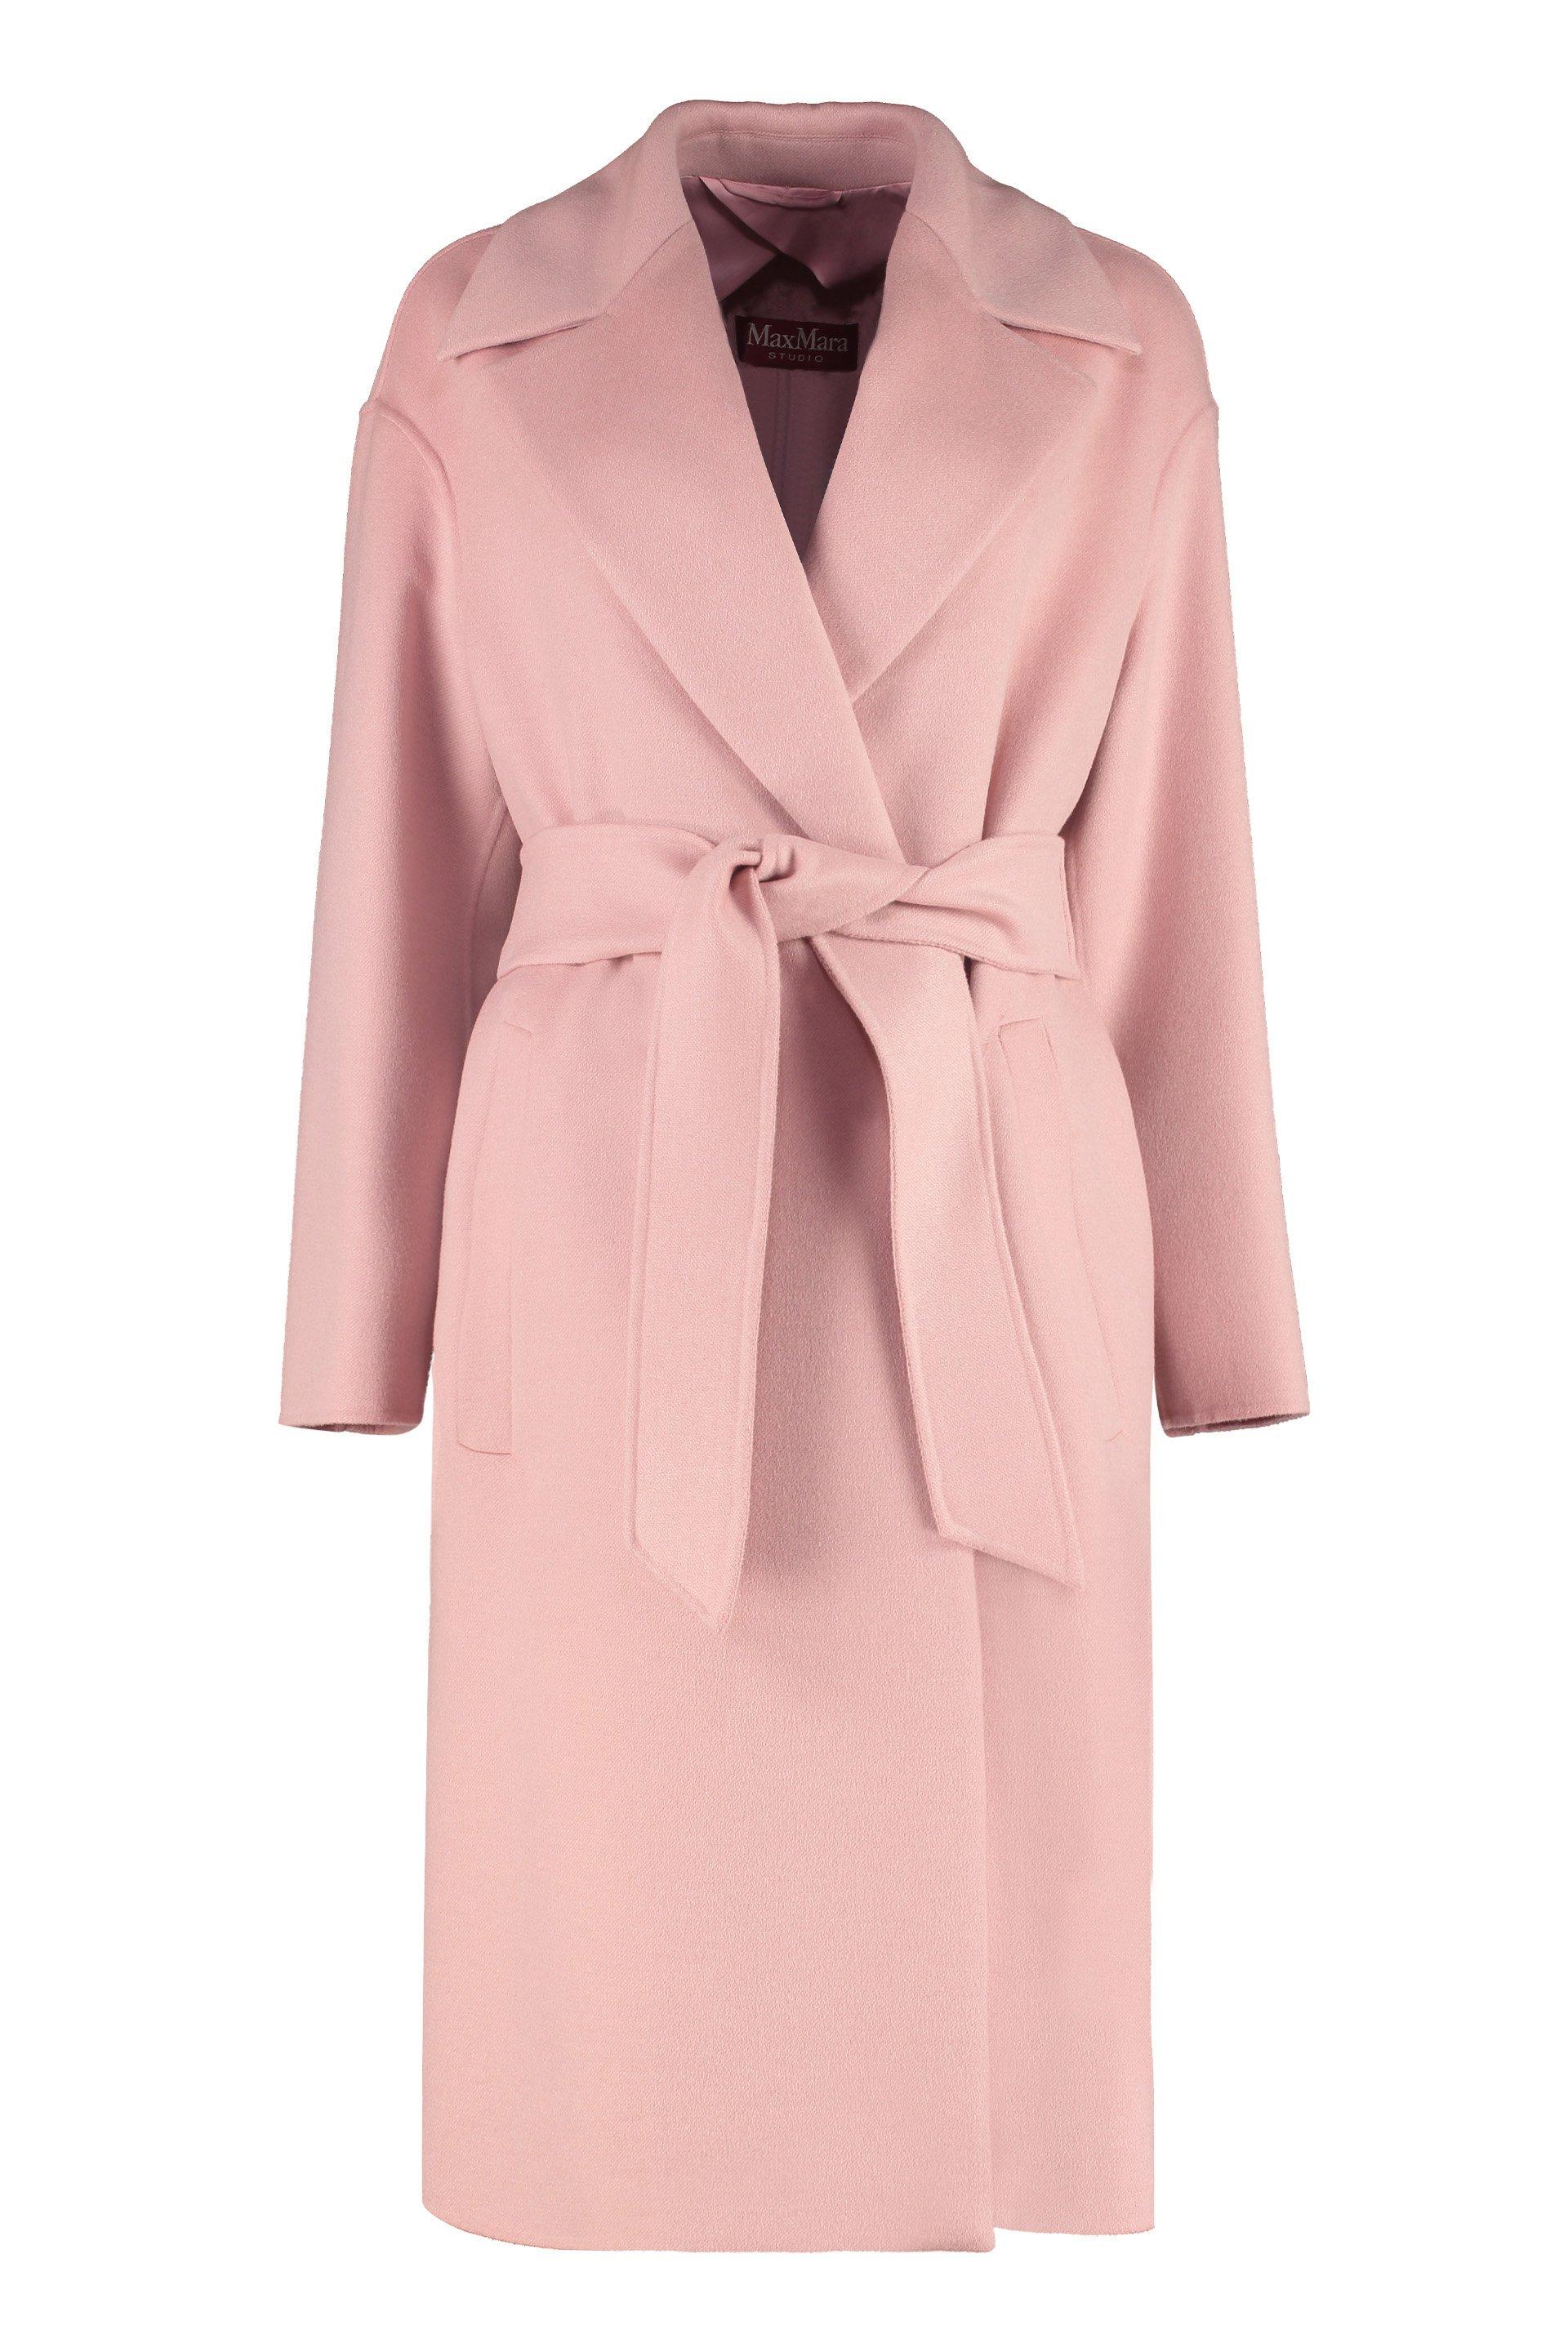 Max Mara Studio Fazio Wrap Coat in Pink | Lyst